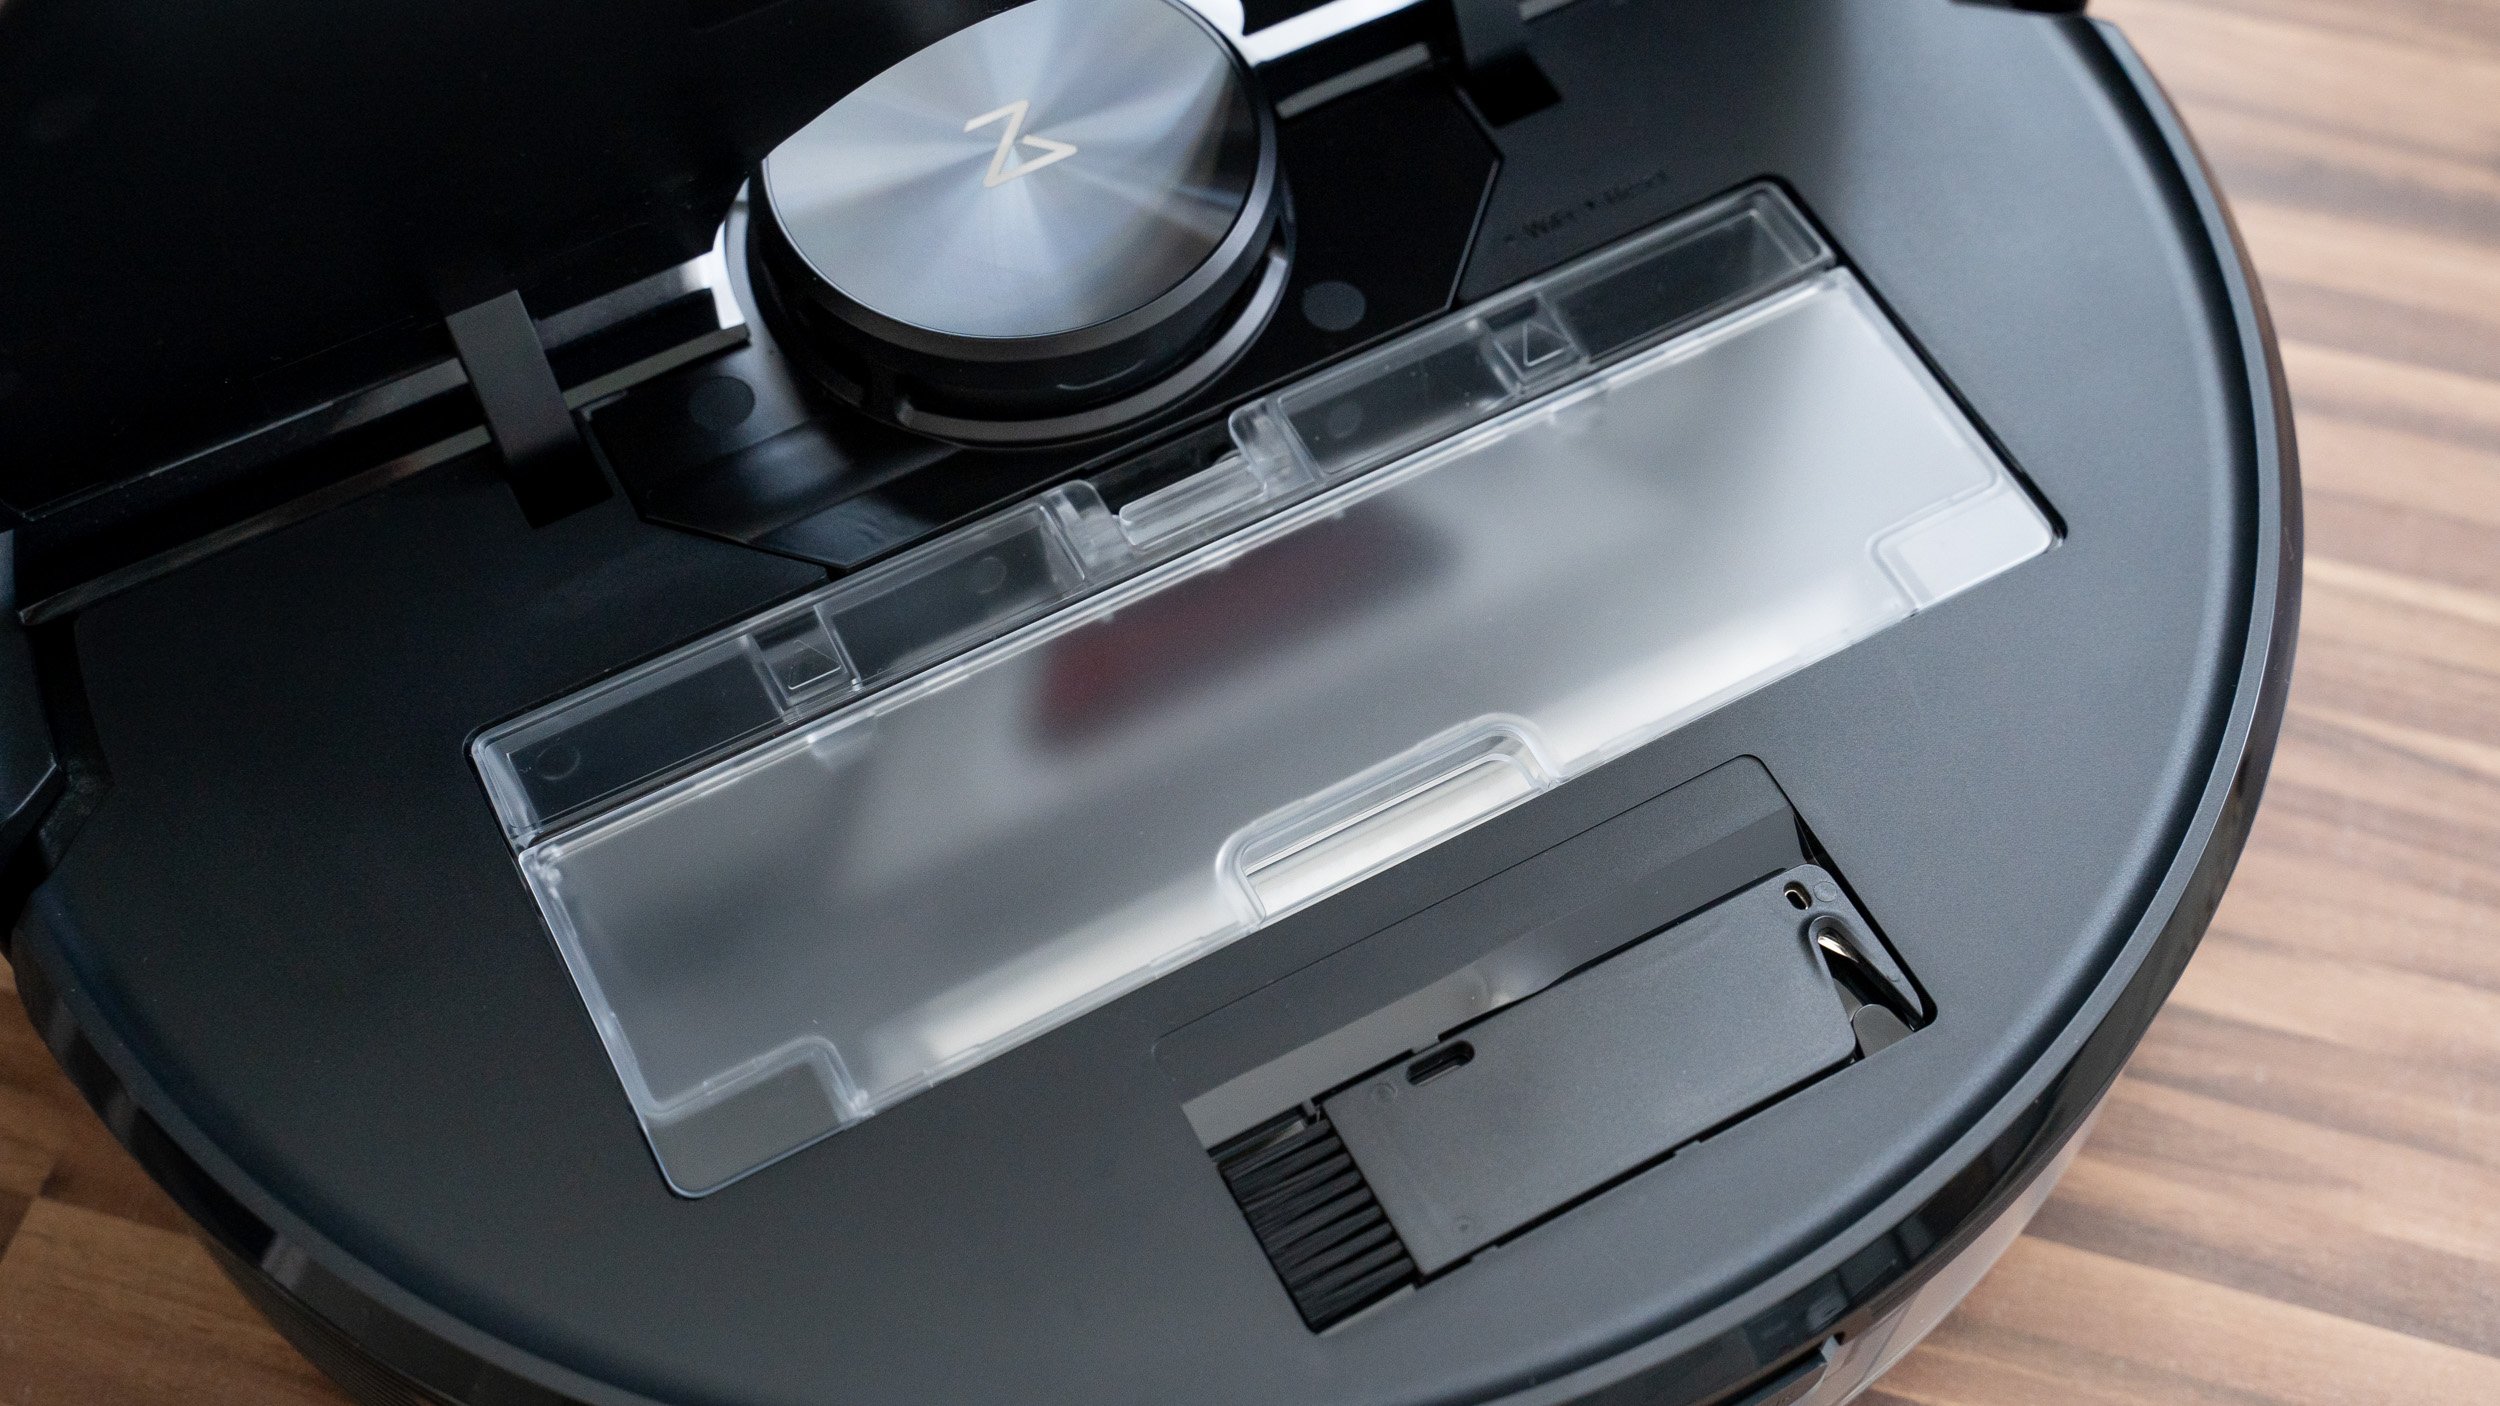 Der Staubbehälter im Roborock S6 MaxV lässt sich einfach entnehmen und reinigen.